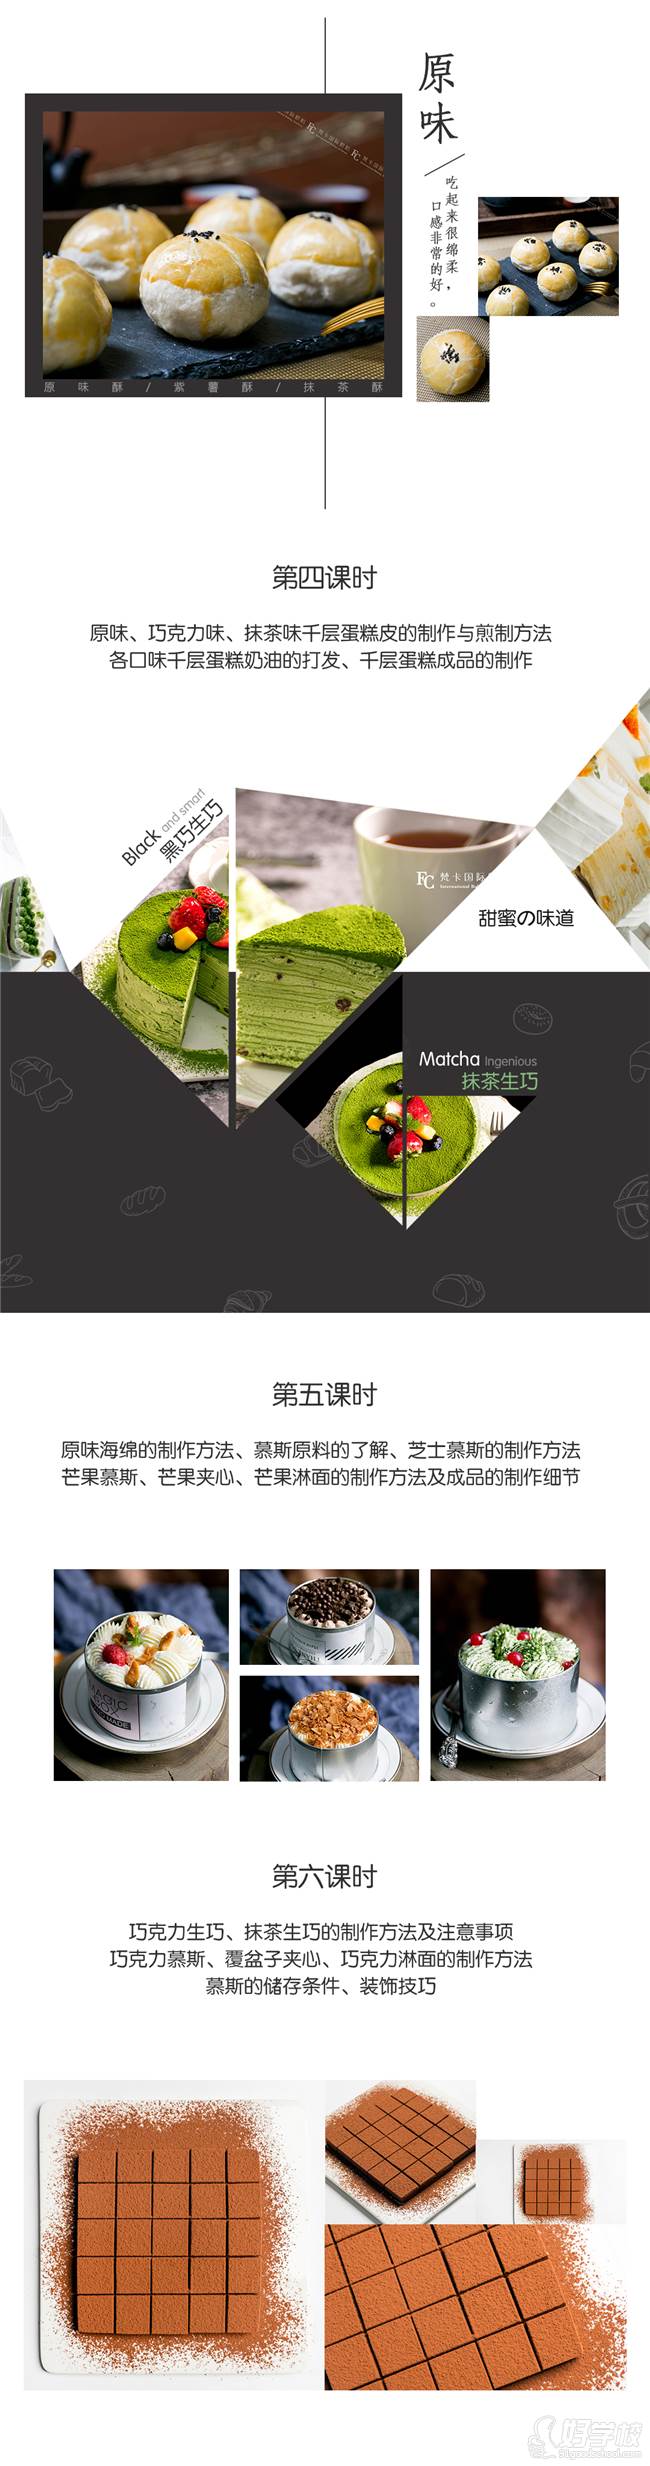 上海梵卡国际烘焙学院  课程内容